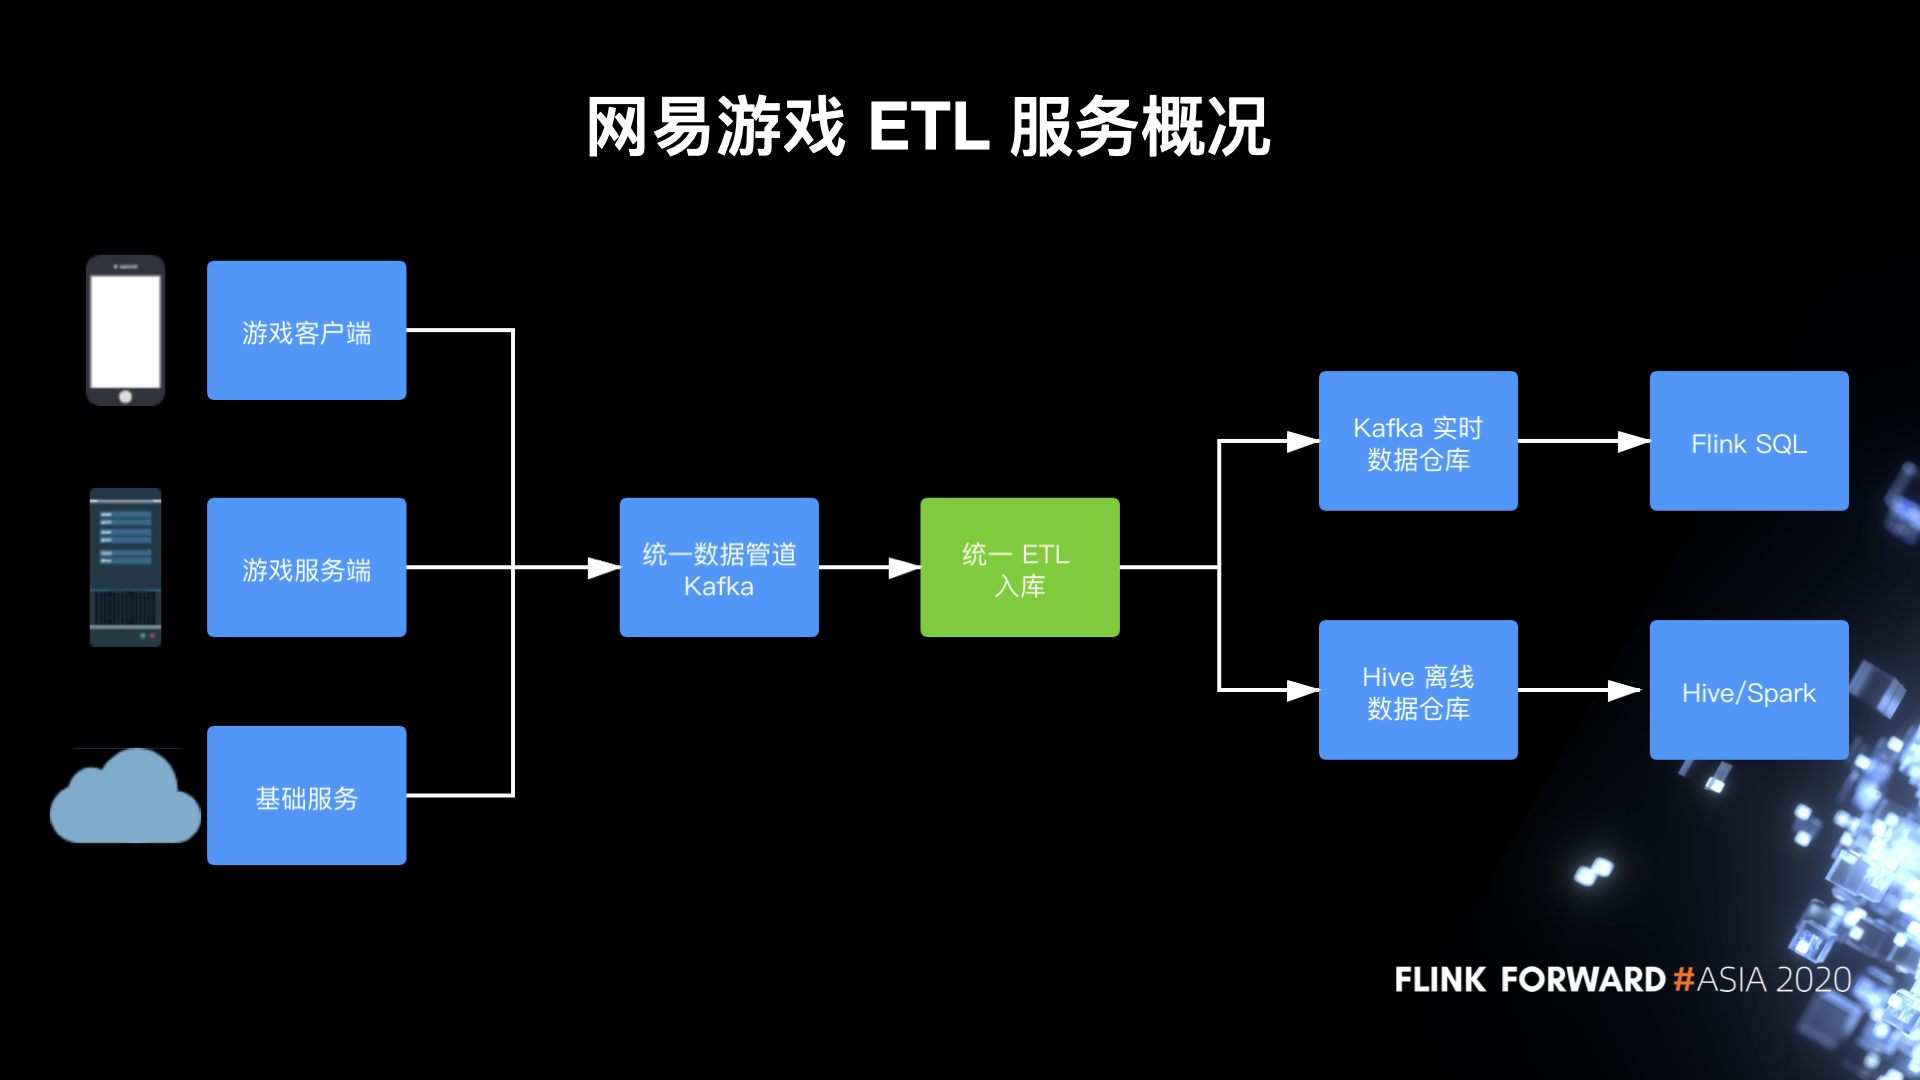 图1. 网易游戏 ETL 服务概况